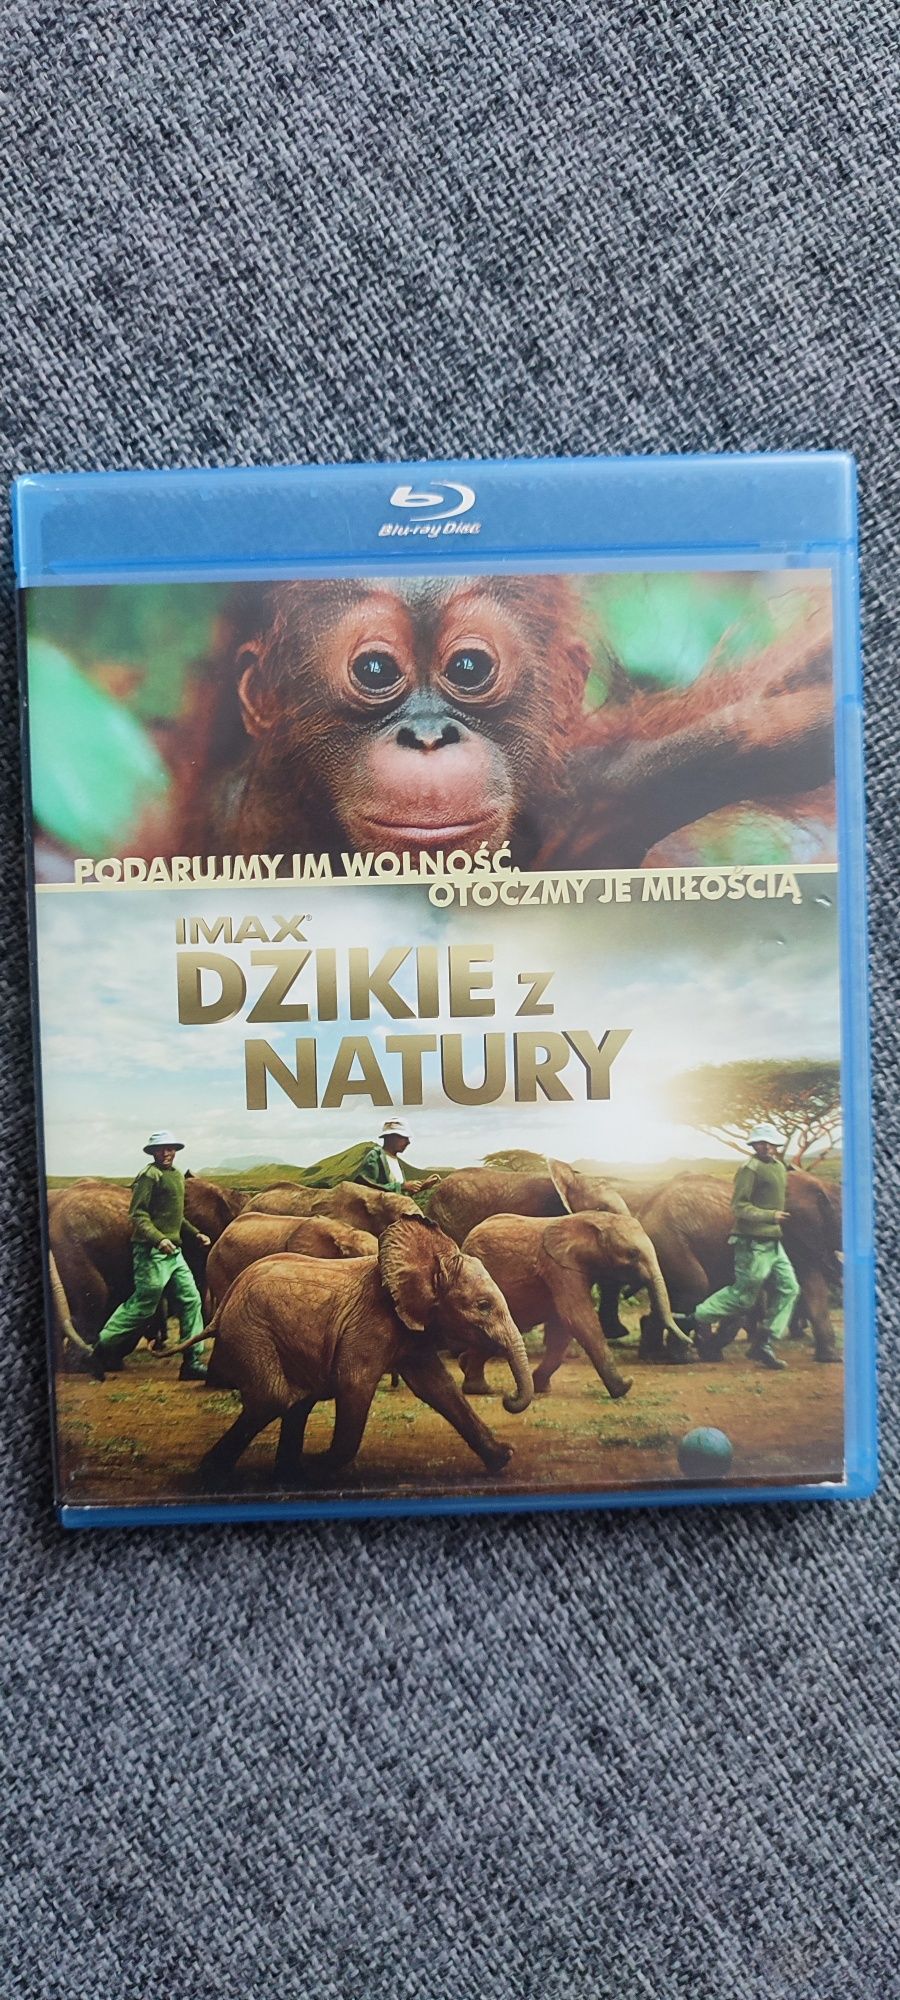 Blu-ray film Dzikie z natury